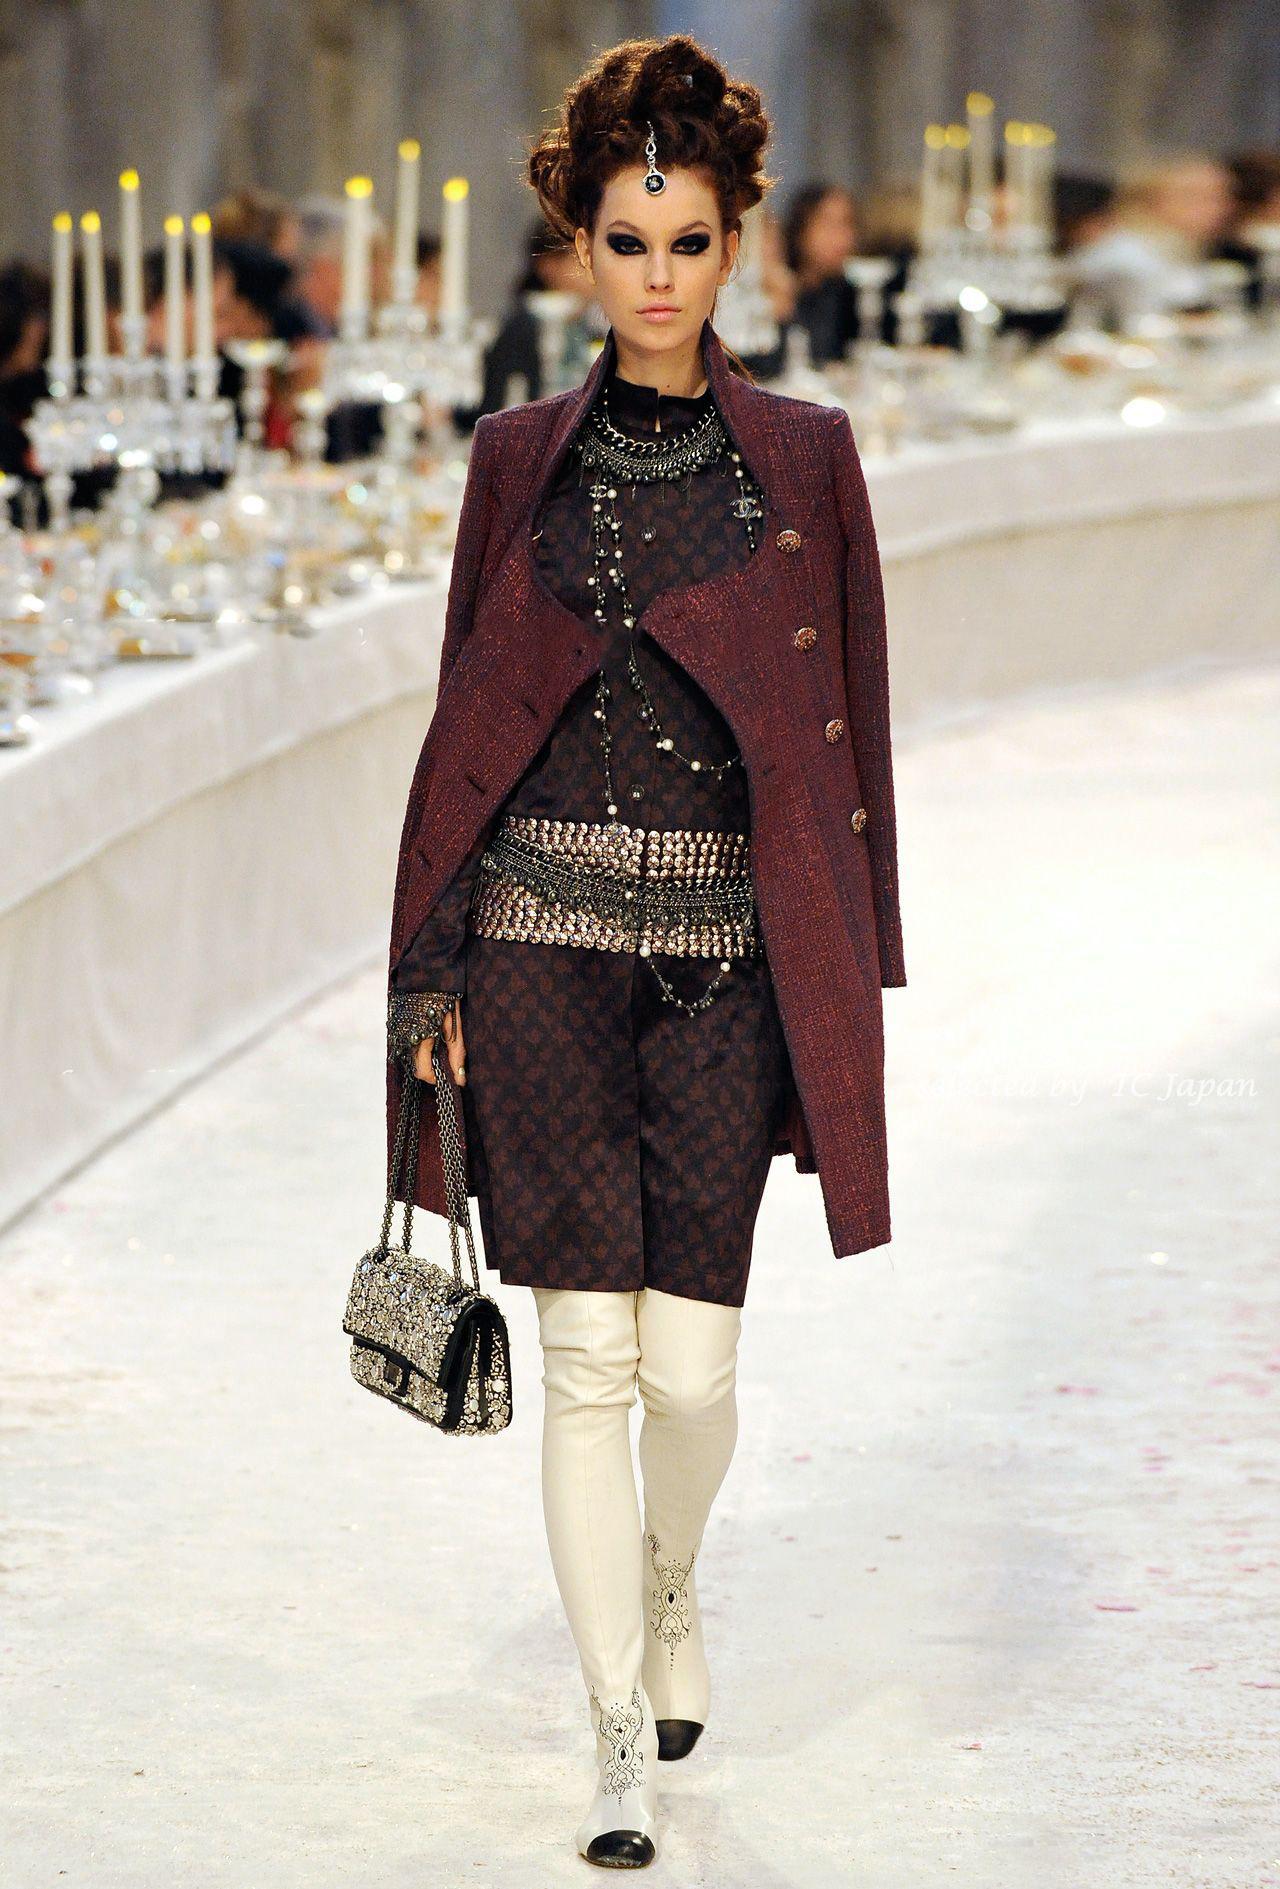 Atemberaubender Chanel Tweed-Mantel von Runway of Paris / BOMBAY Collection, 2012 Metiers d'Art, Boutique-Preis war 9.800$
- 20 Juwelen Gripoix-Knöpfe (!)
- tonales Seidenfutter mit Kamelien
Größenbezeichnung 48 FR. Der Zustand ist tadellos.